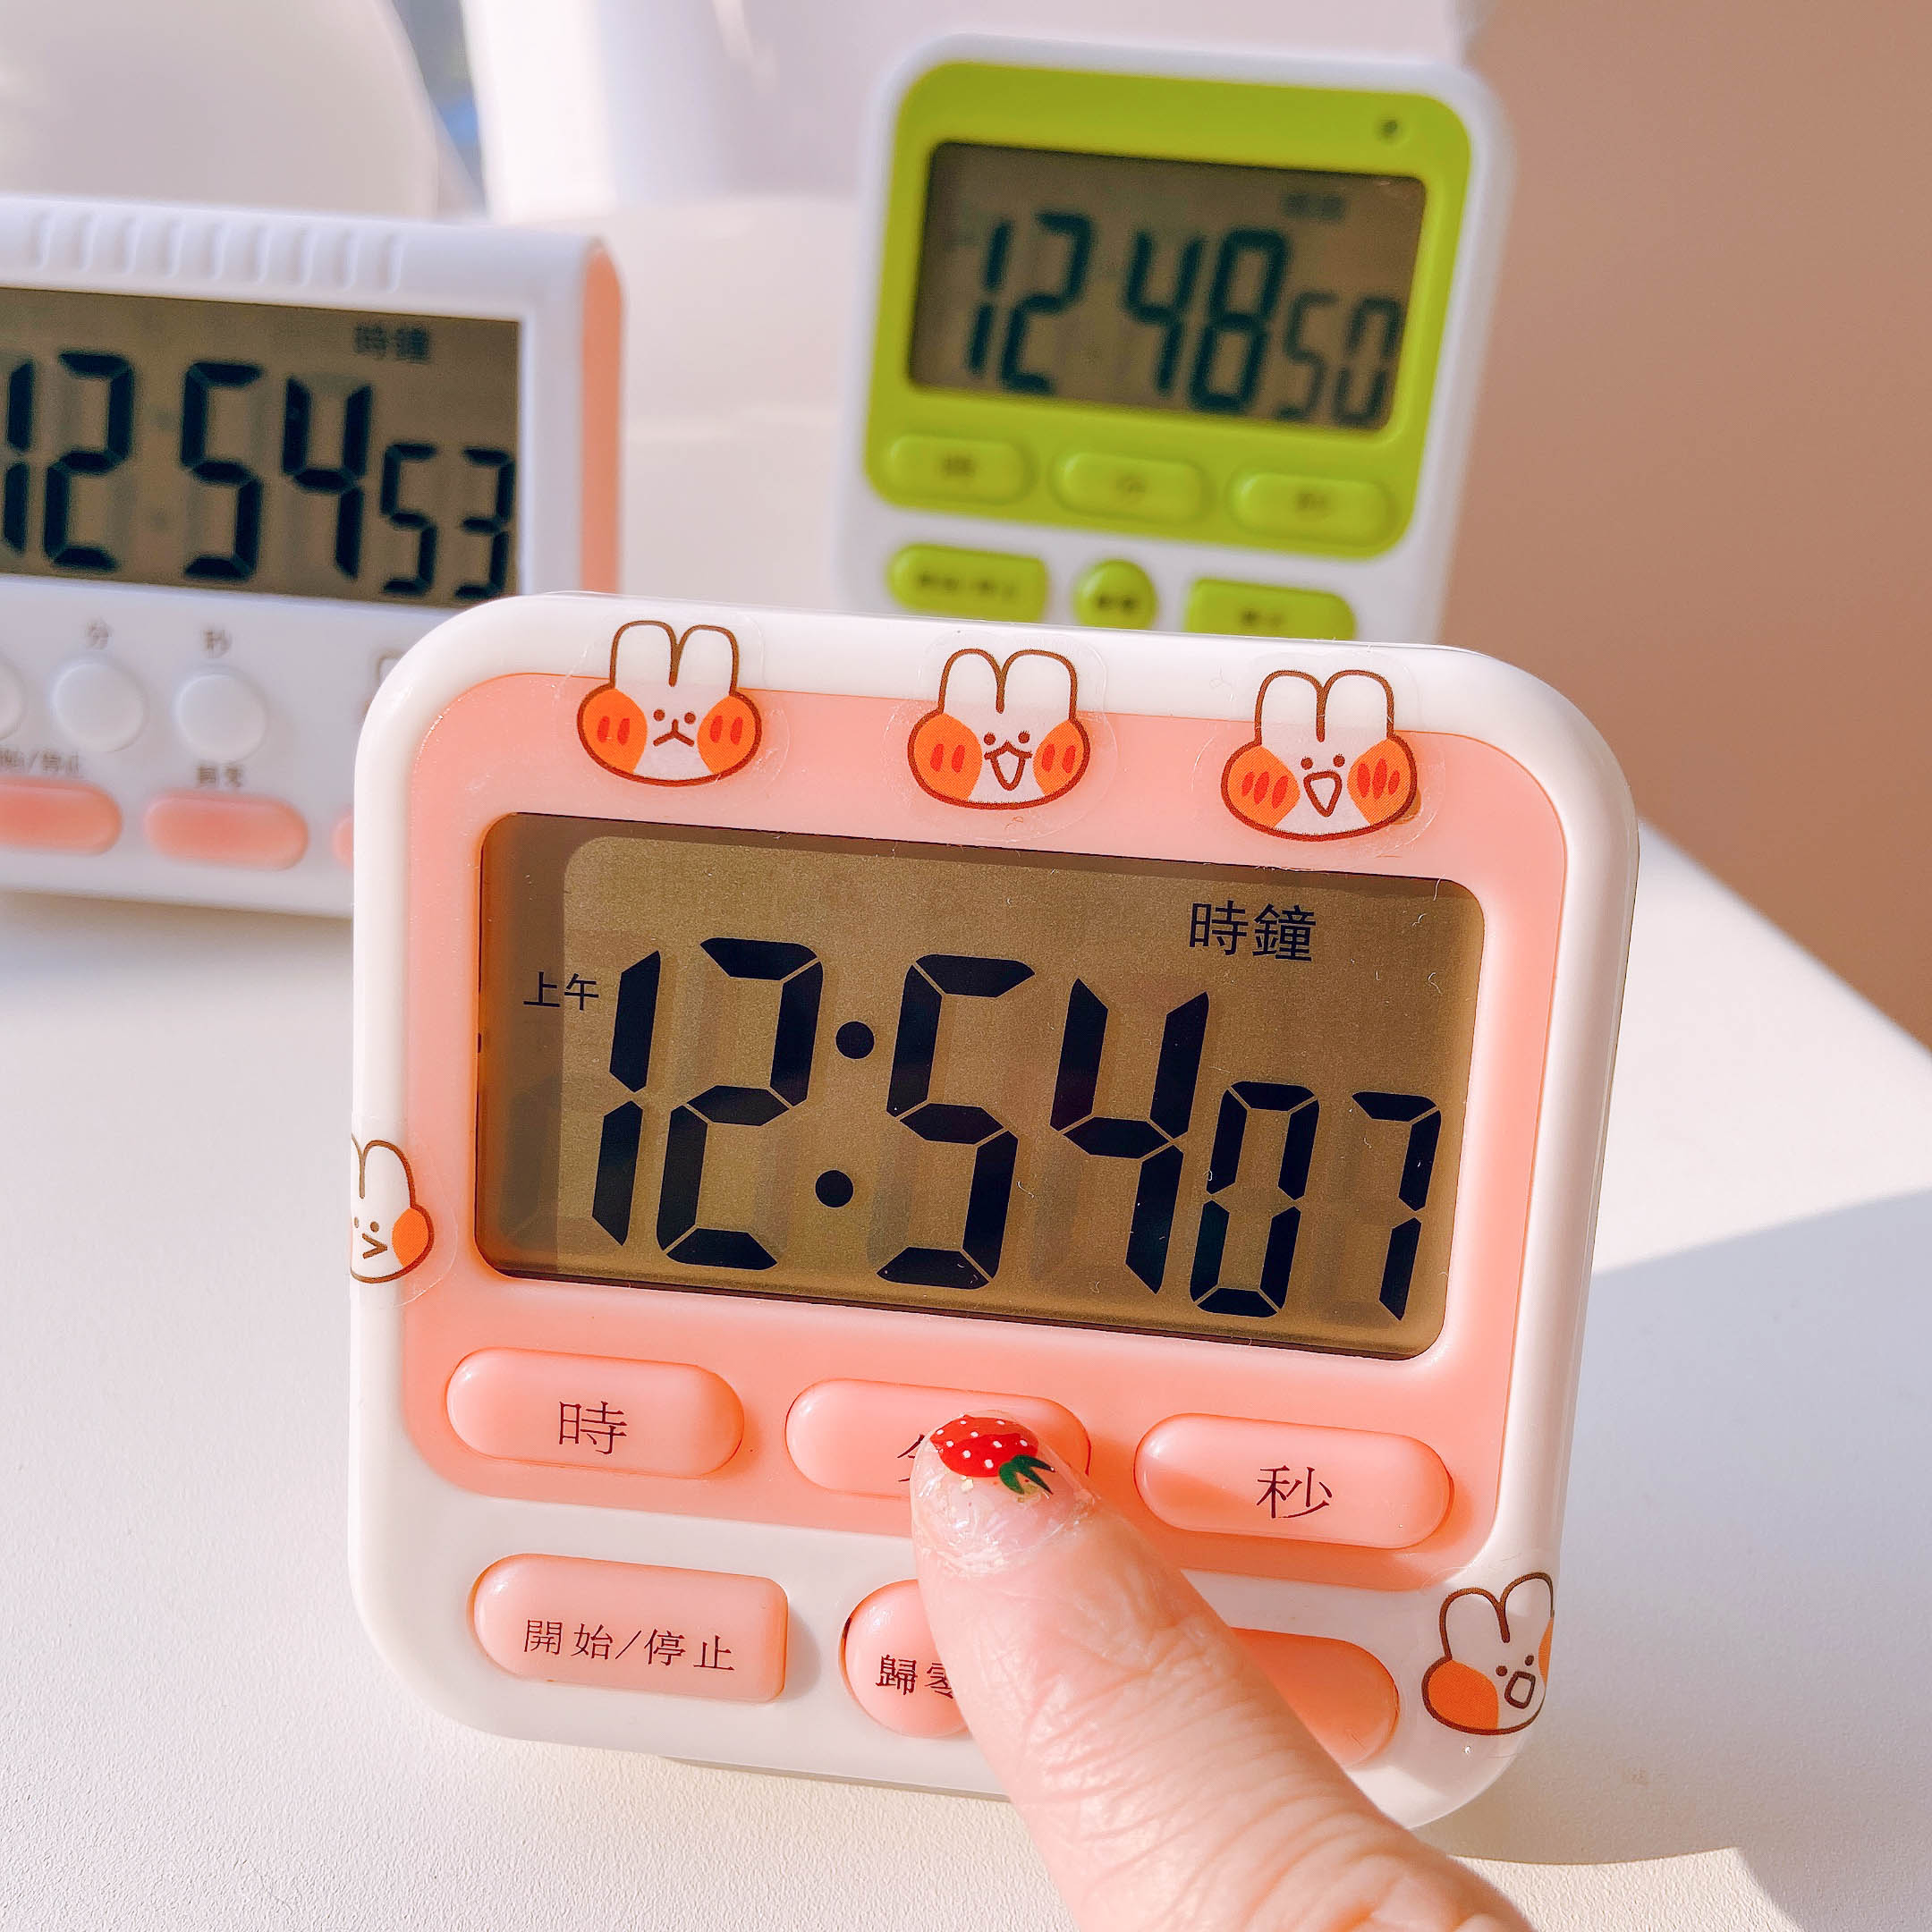 多功能簡約學習定時器提醒器少女心可愛計時器學生做題可靜音鬧鐘